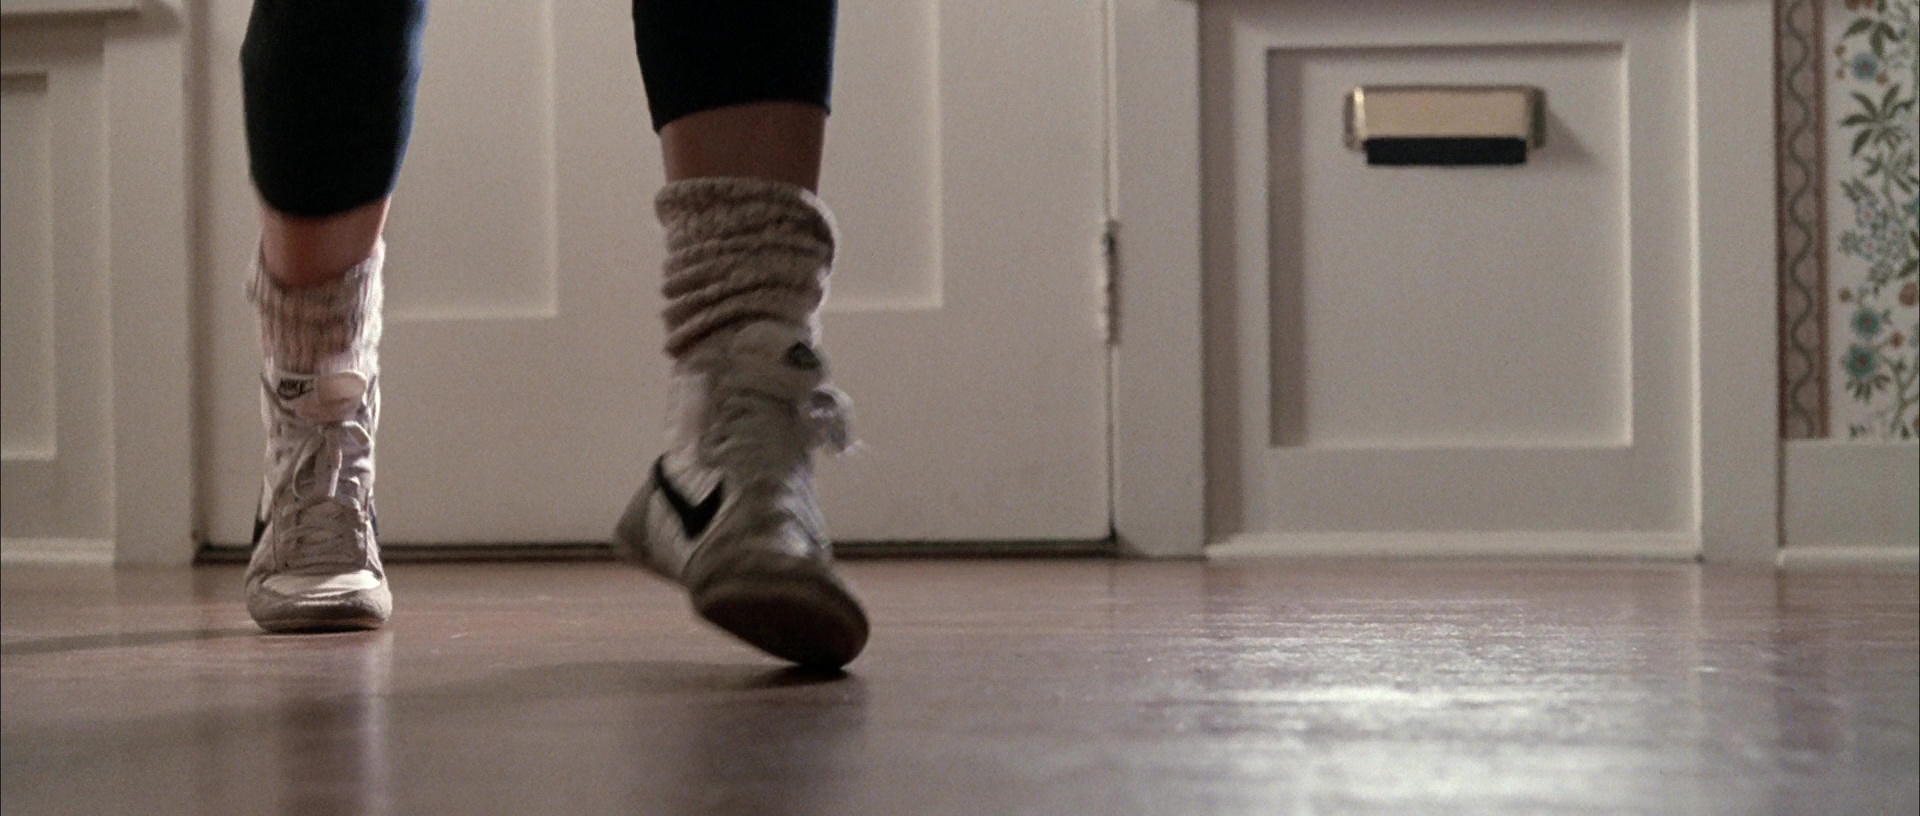 Nike Sneakers Worn by Jennifer Grey in Ferris Bueller’s Day Off (1986) Movie